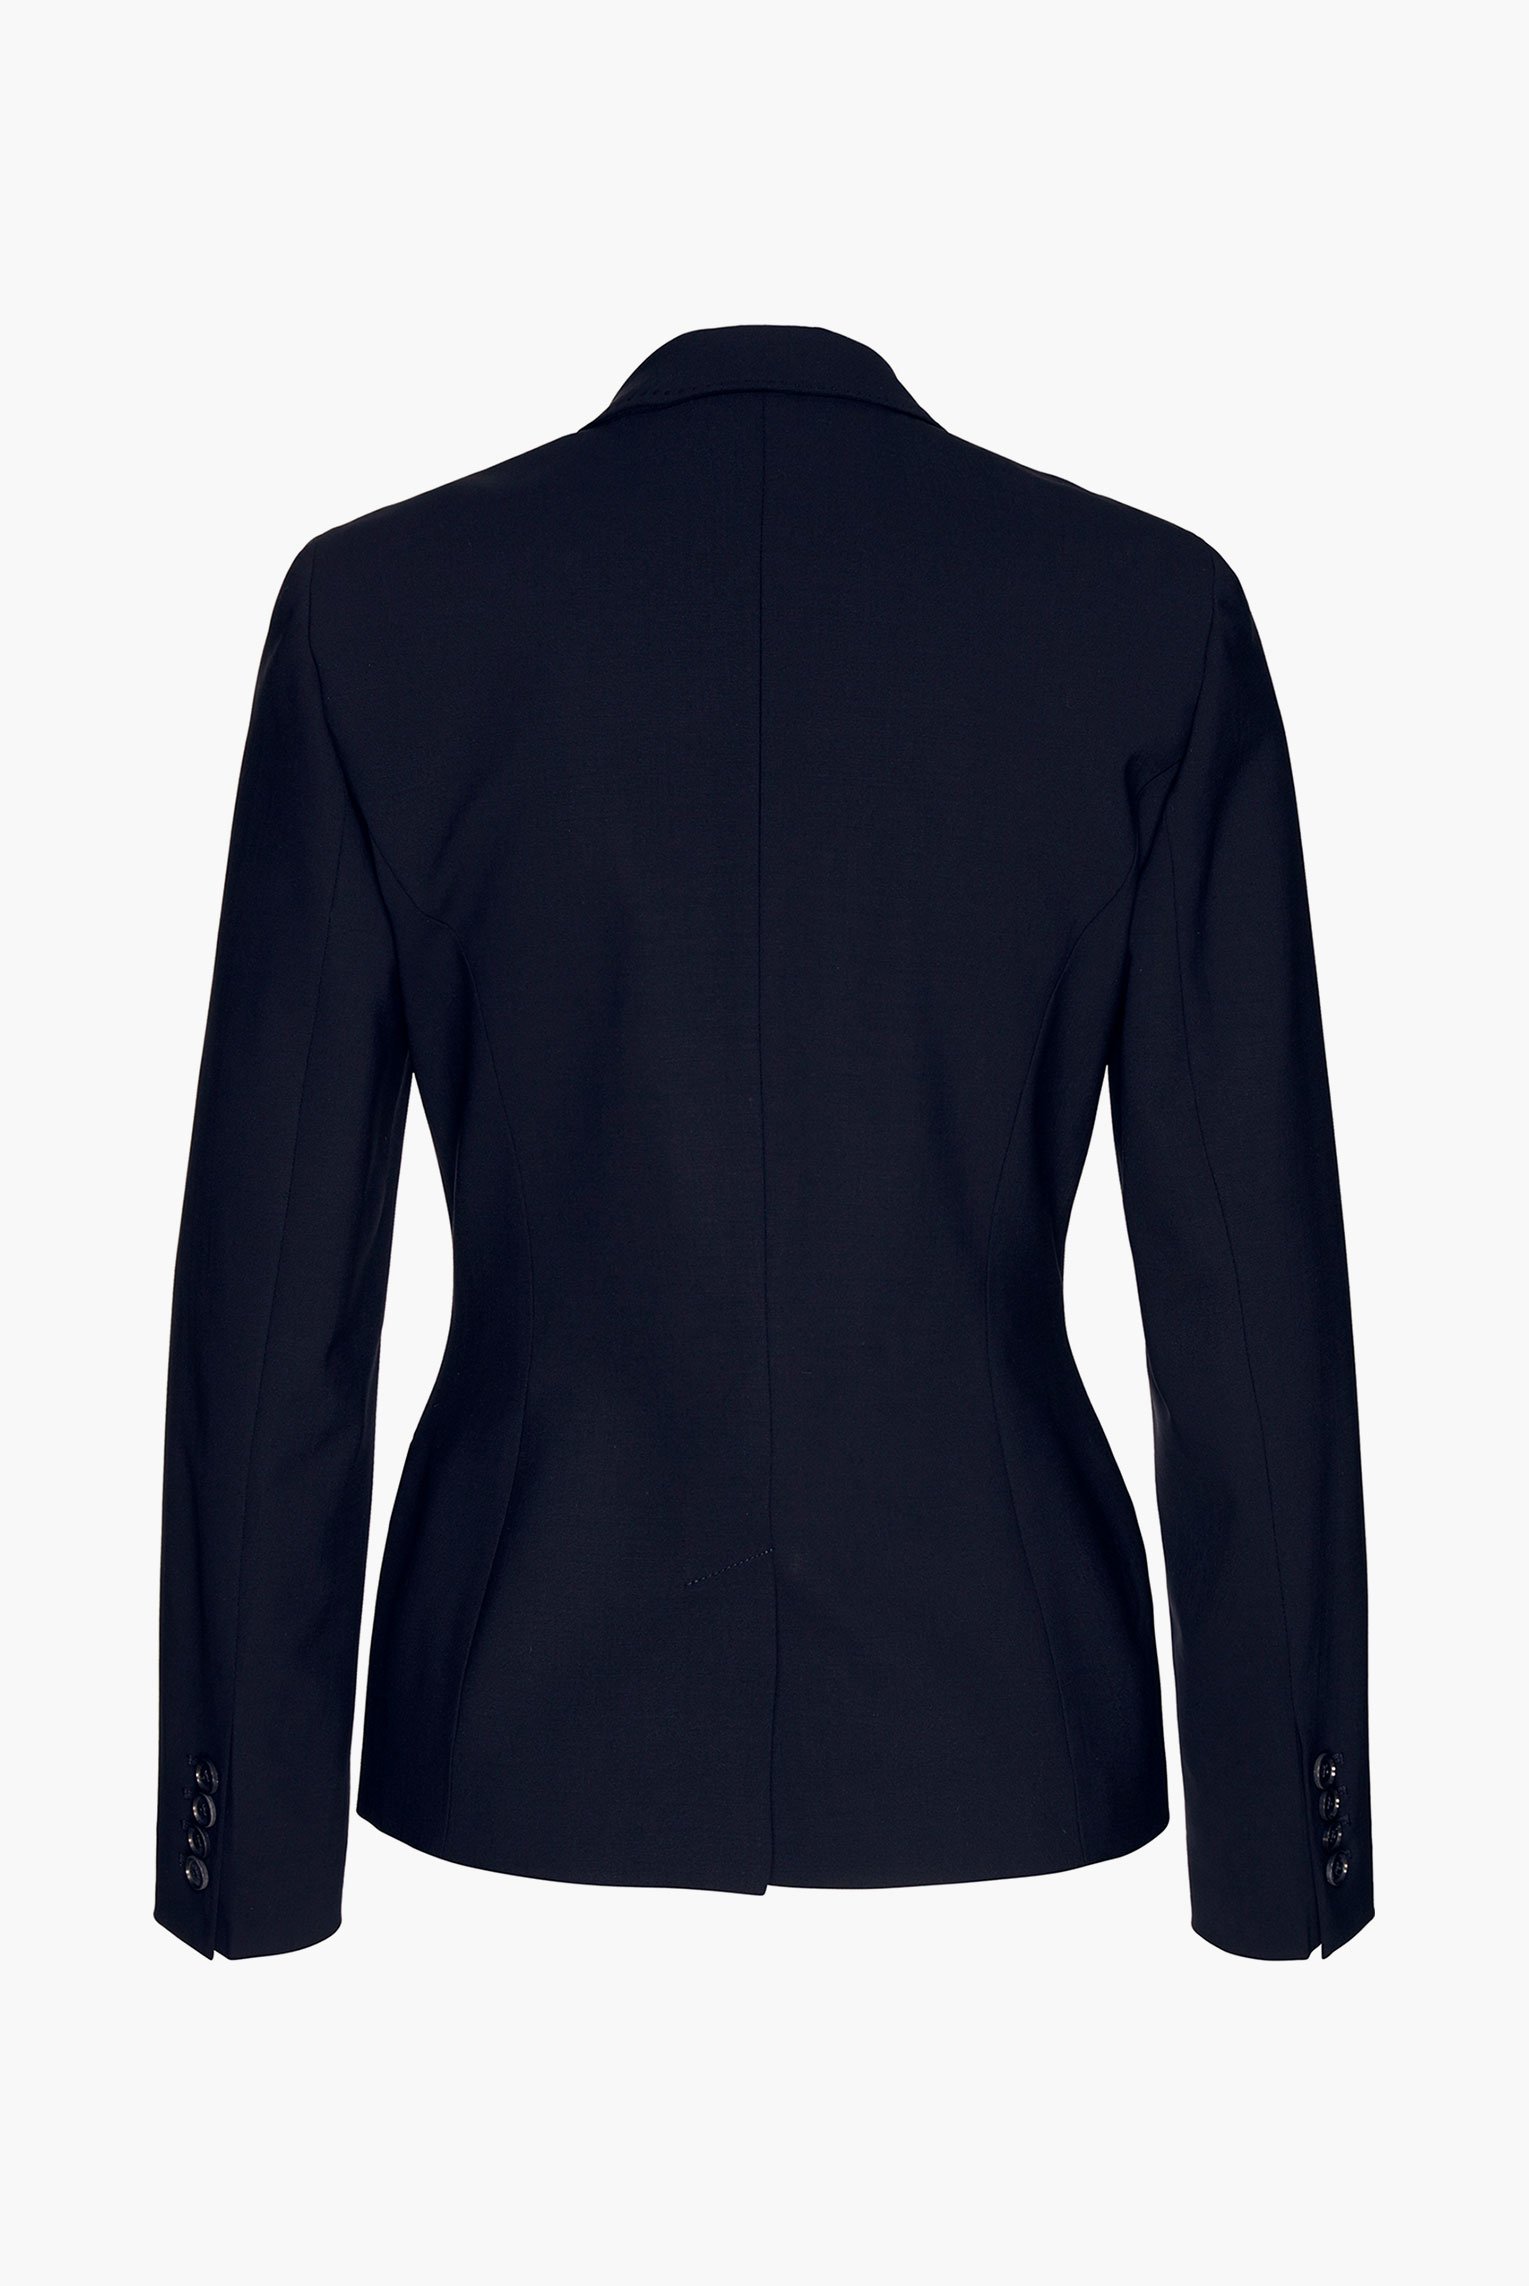 Blazers+Jiny - classic business blazer in wool-stretch+04.6085.07.H00528.790.32